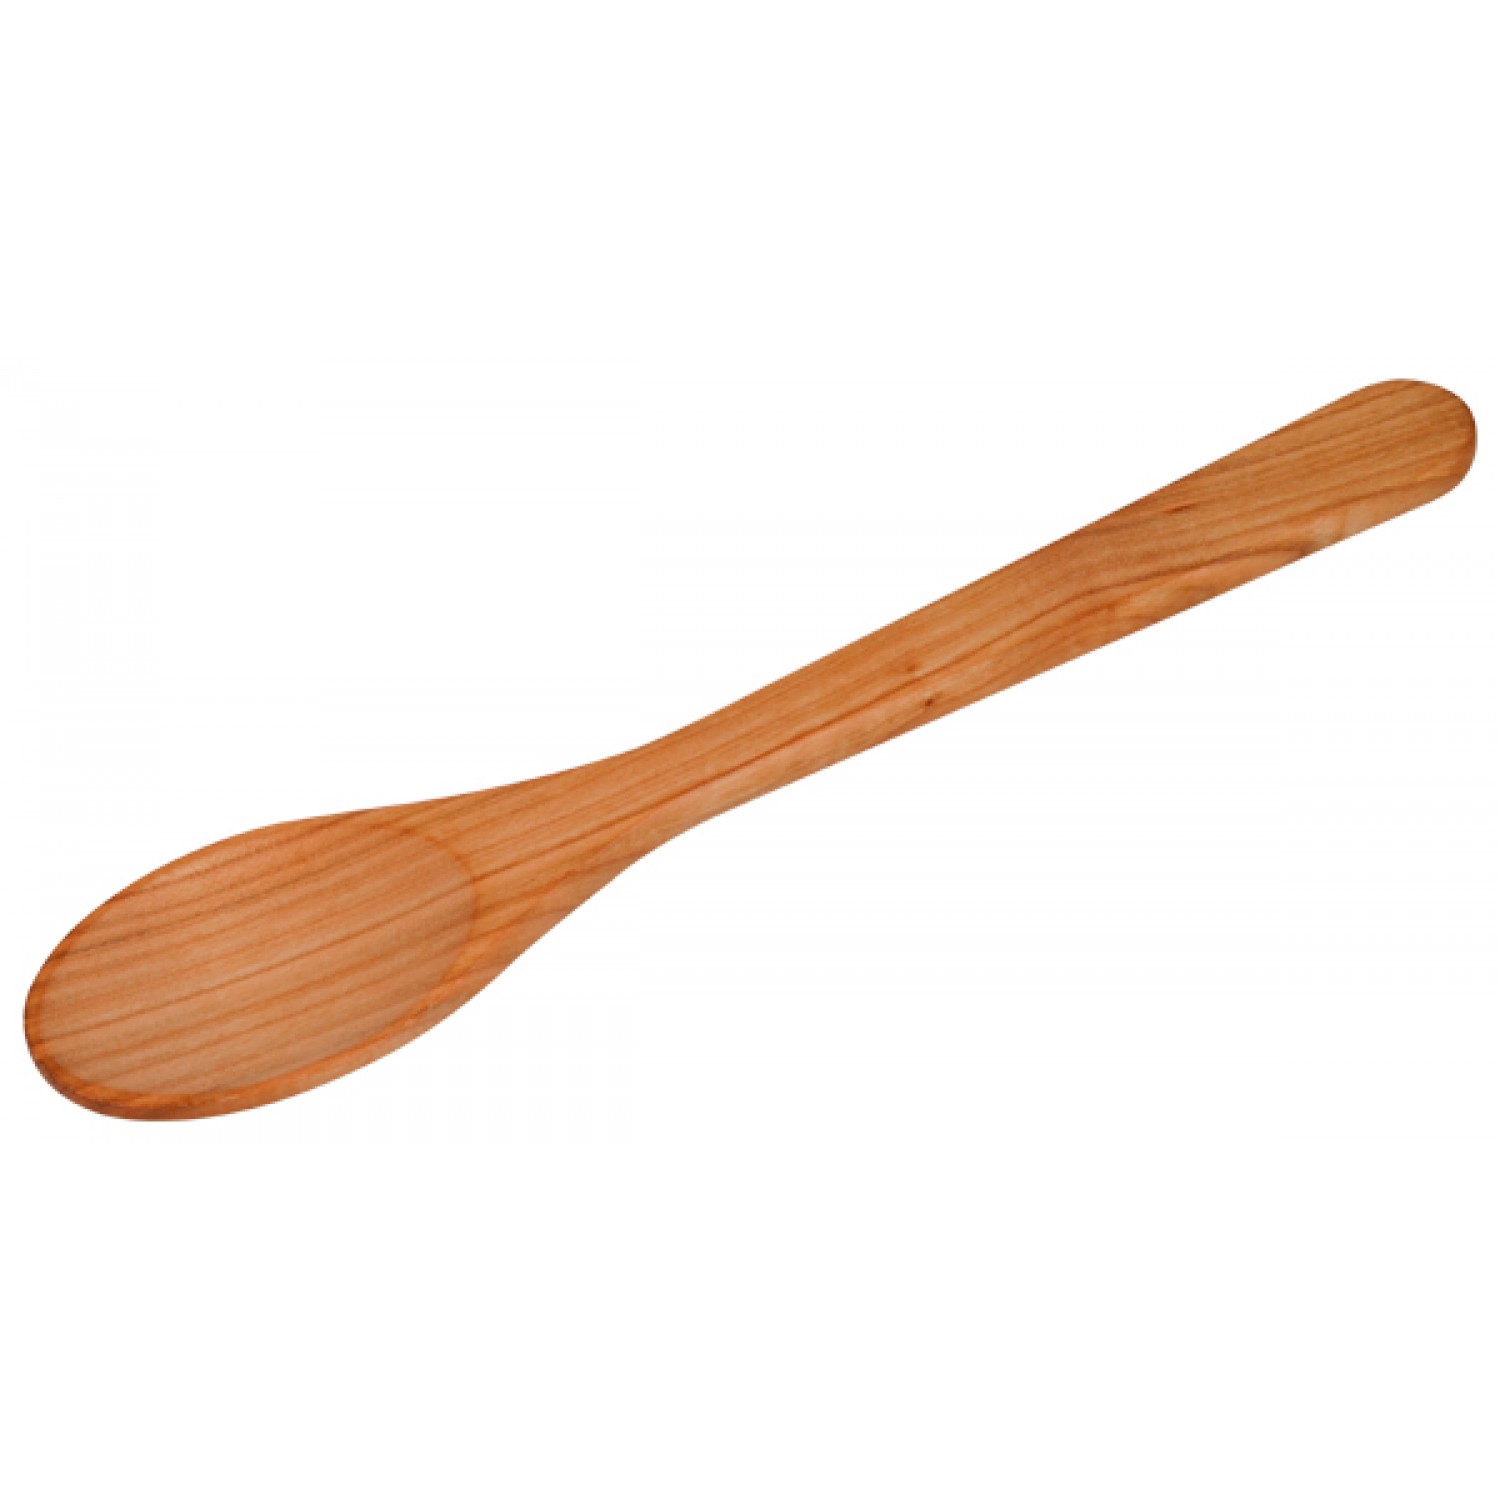 Wooden cooking spoon - certified cherry wood | Biodora